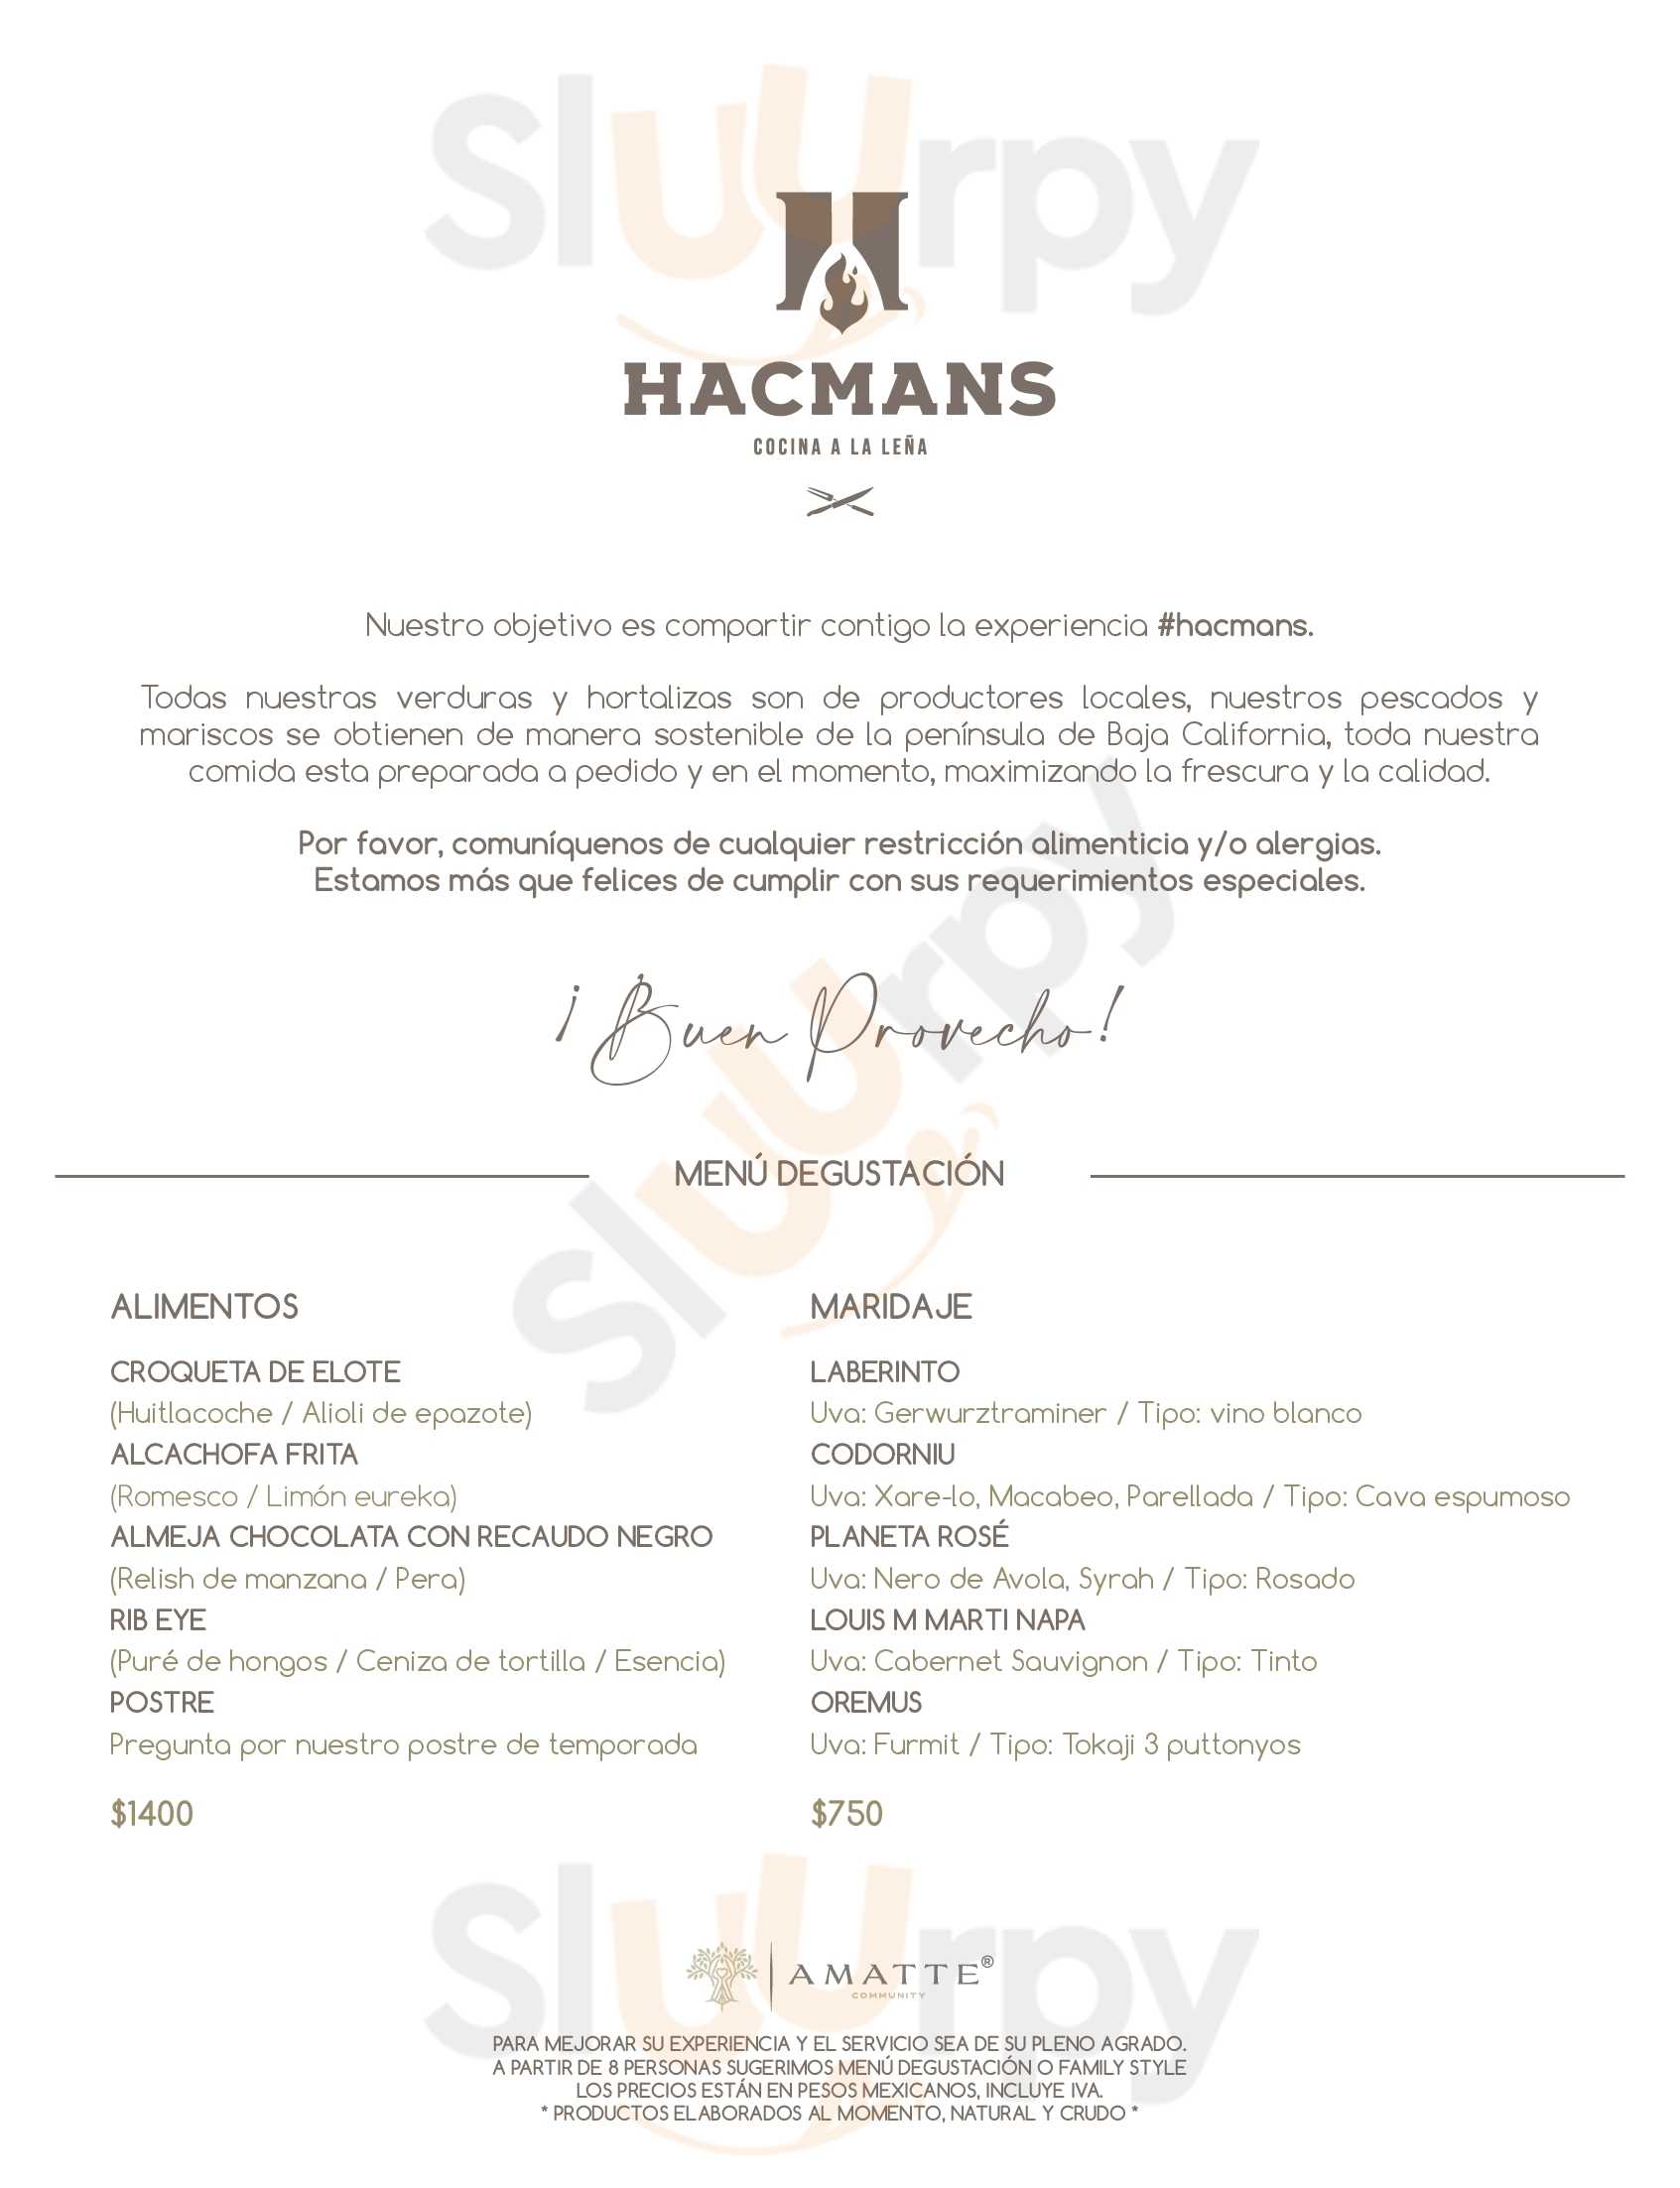 Hacmans Cocina A La Leña San Miguel de Allende Menu - 1